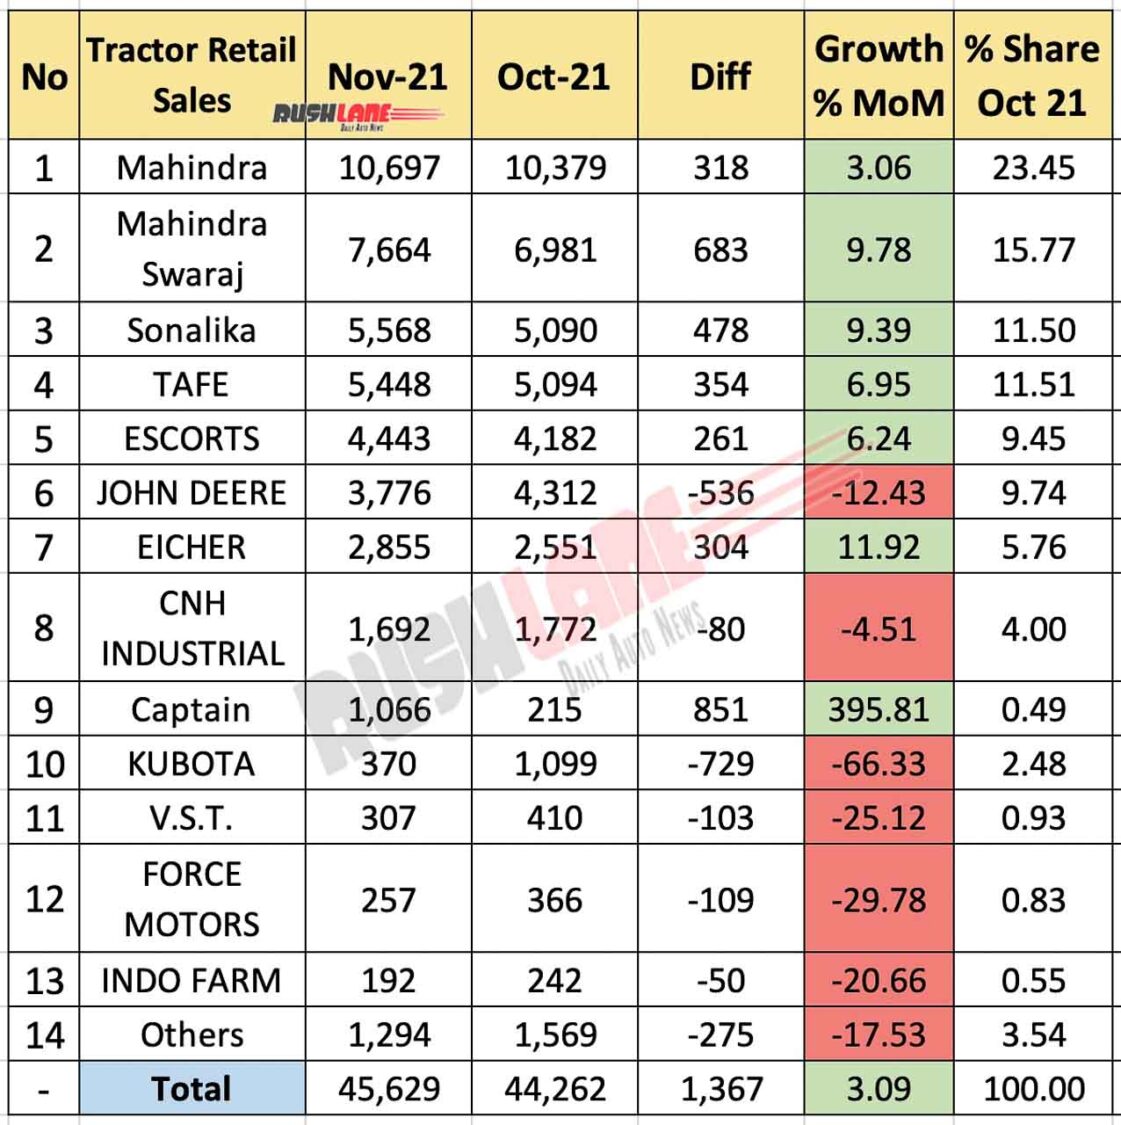 Tractor Sales Nov 2021 vs Oct 2021 (MoM)